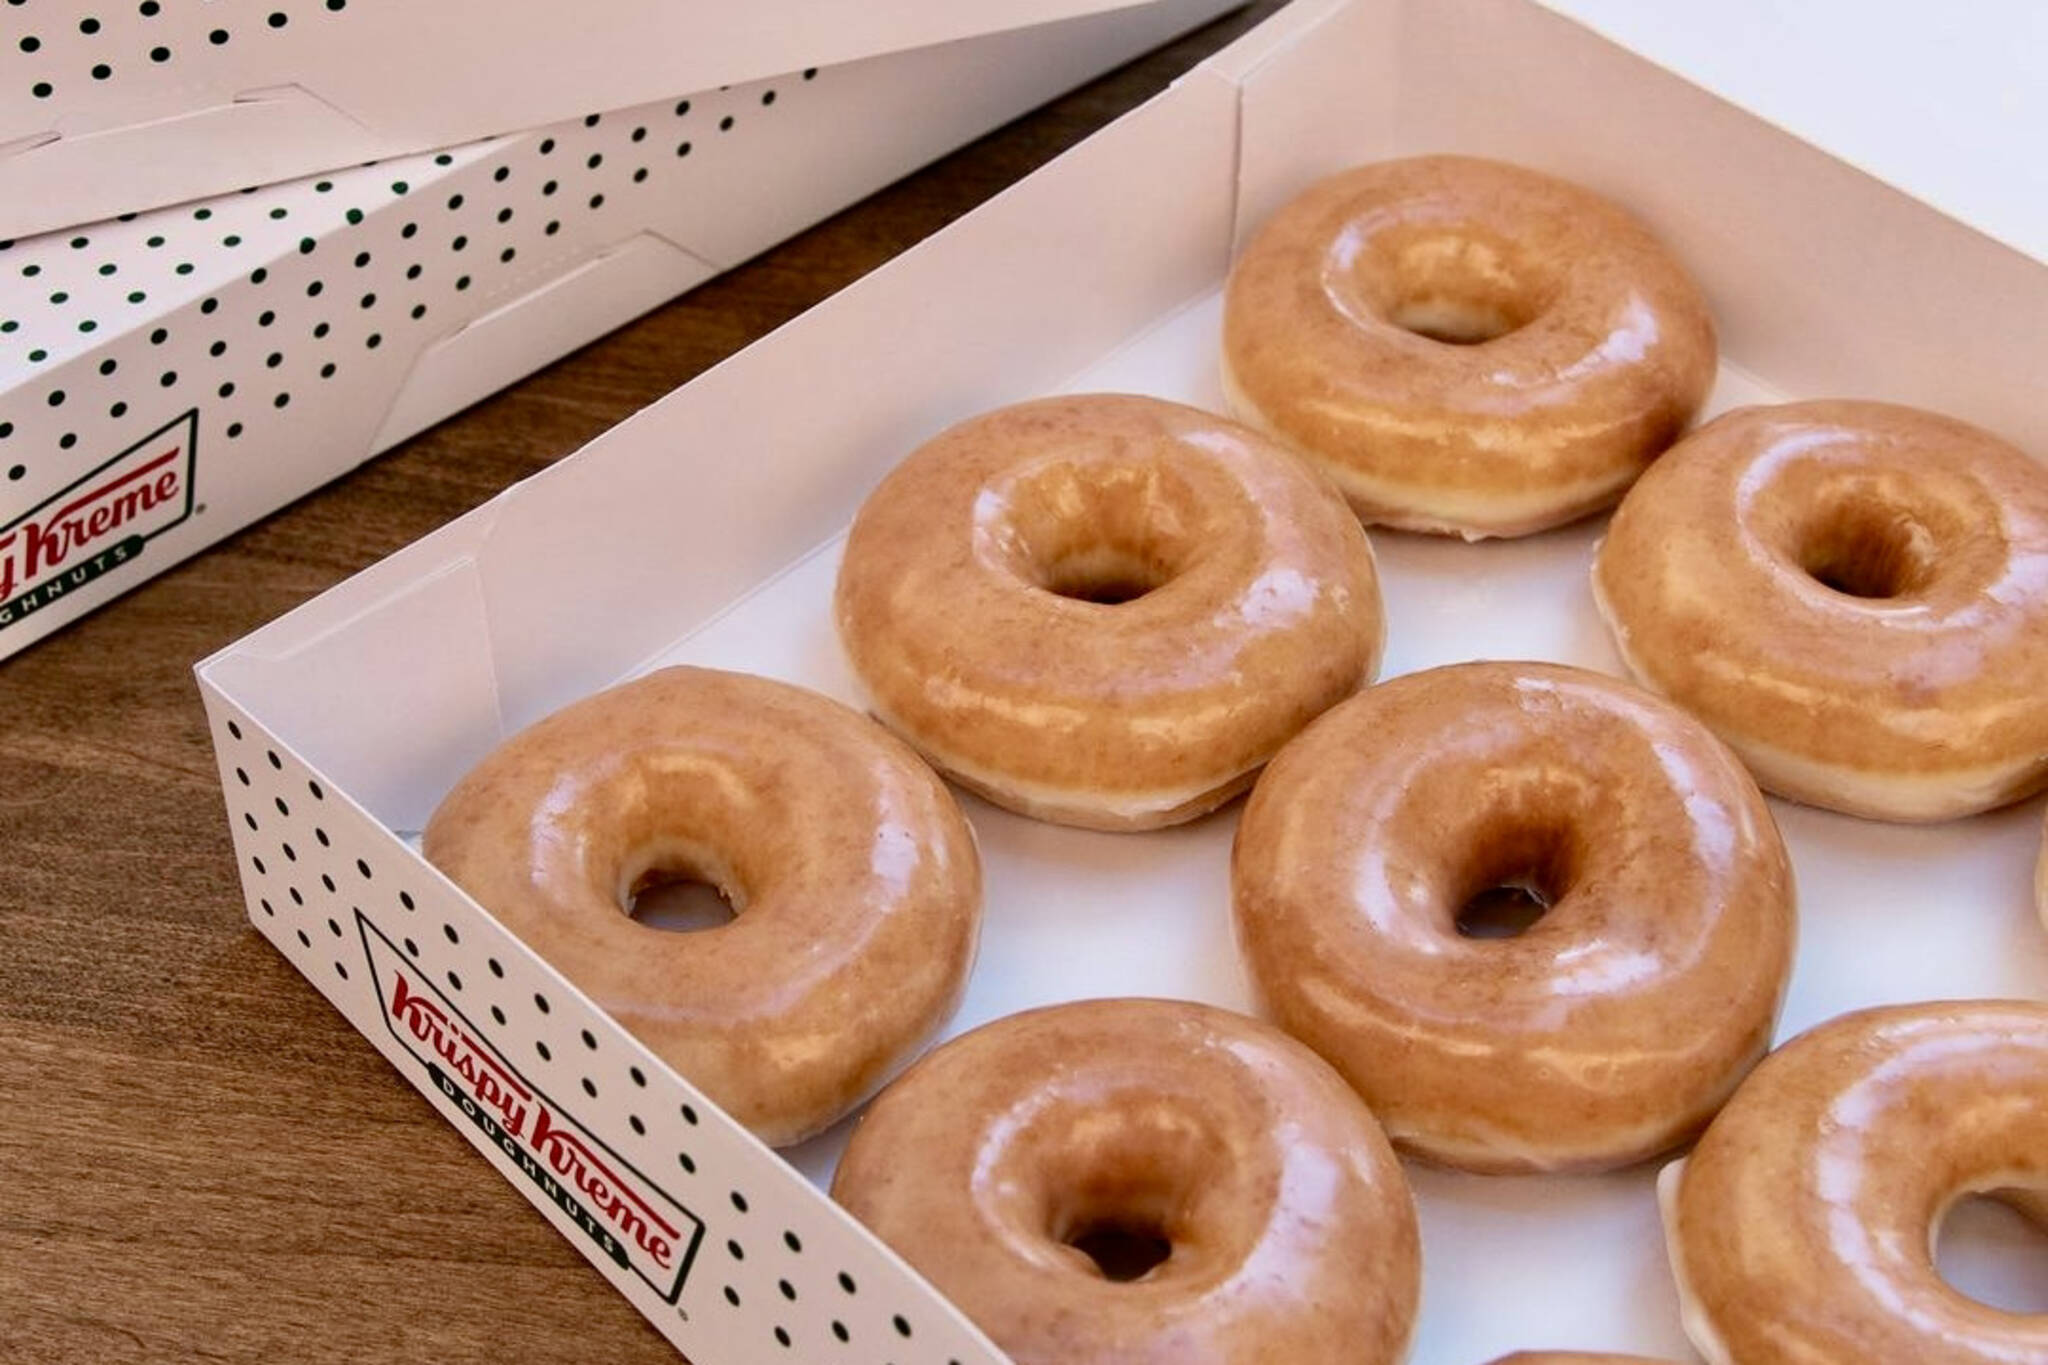 Krispy Kreme is giving away free donuts in Toronto this week